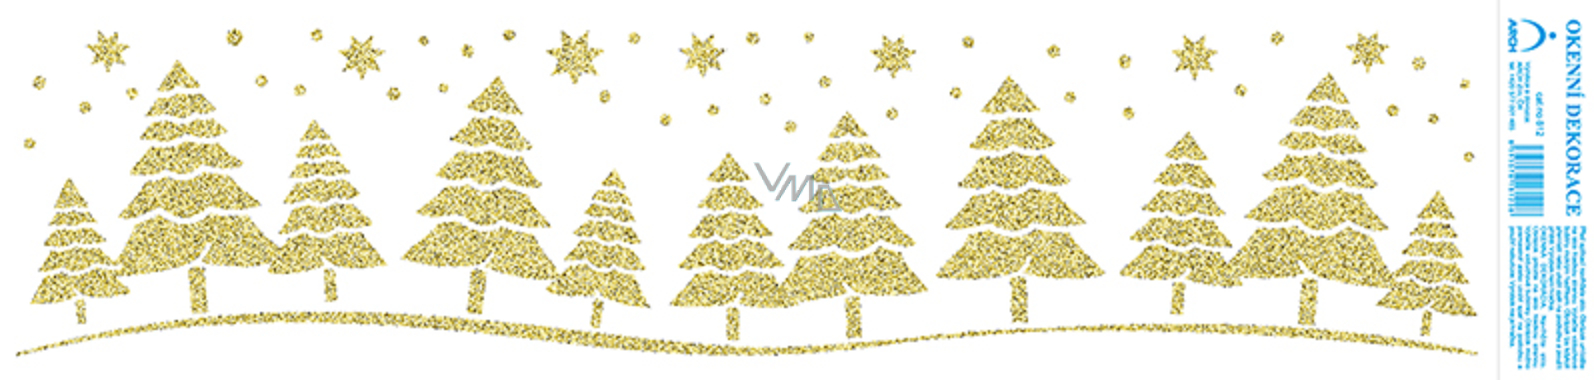 Arch Vánoční samolepka, okenní fólie bez lepidla Zlaté stromky s glitry ...